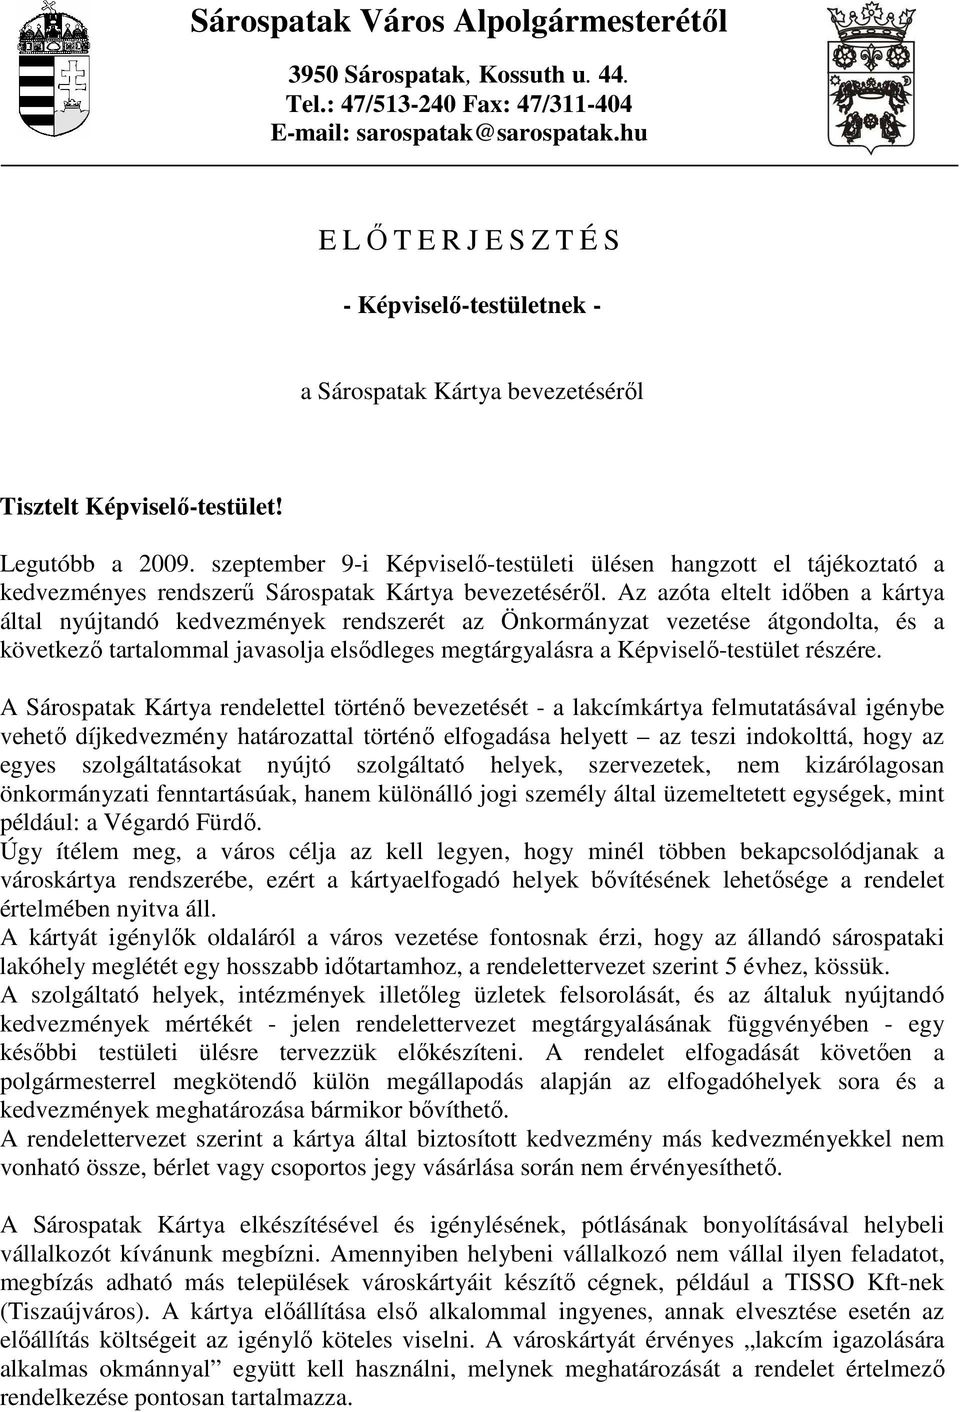 szeptember 9-i Képviselı-testületi ülésen hangzott el tájékoztató a kedvezményes rendszerő Sárospatak Kártya bevezetésérıl.